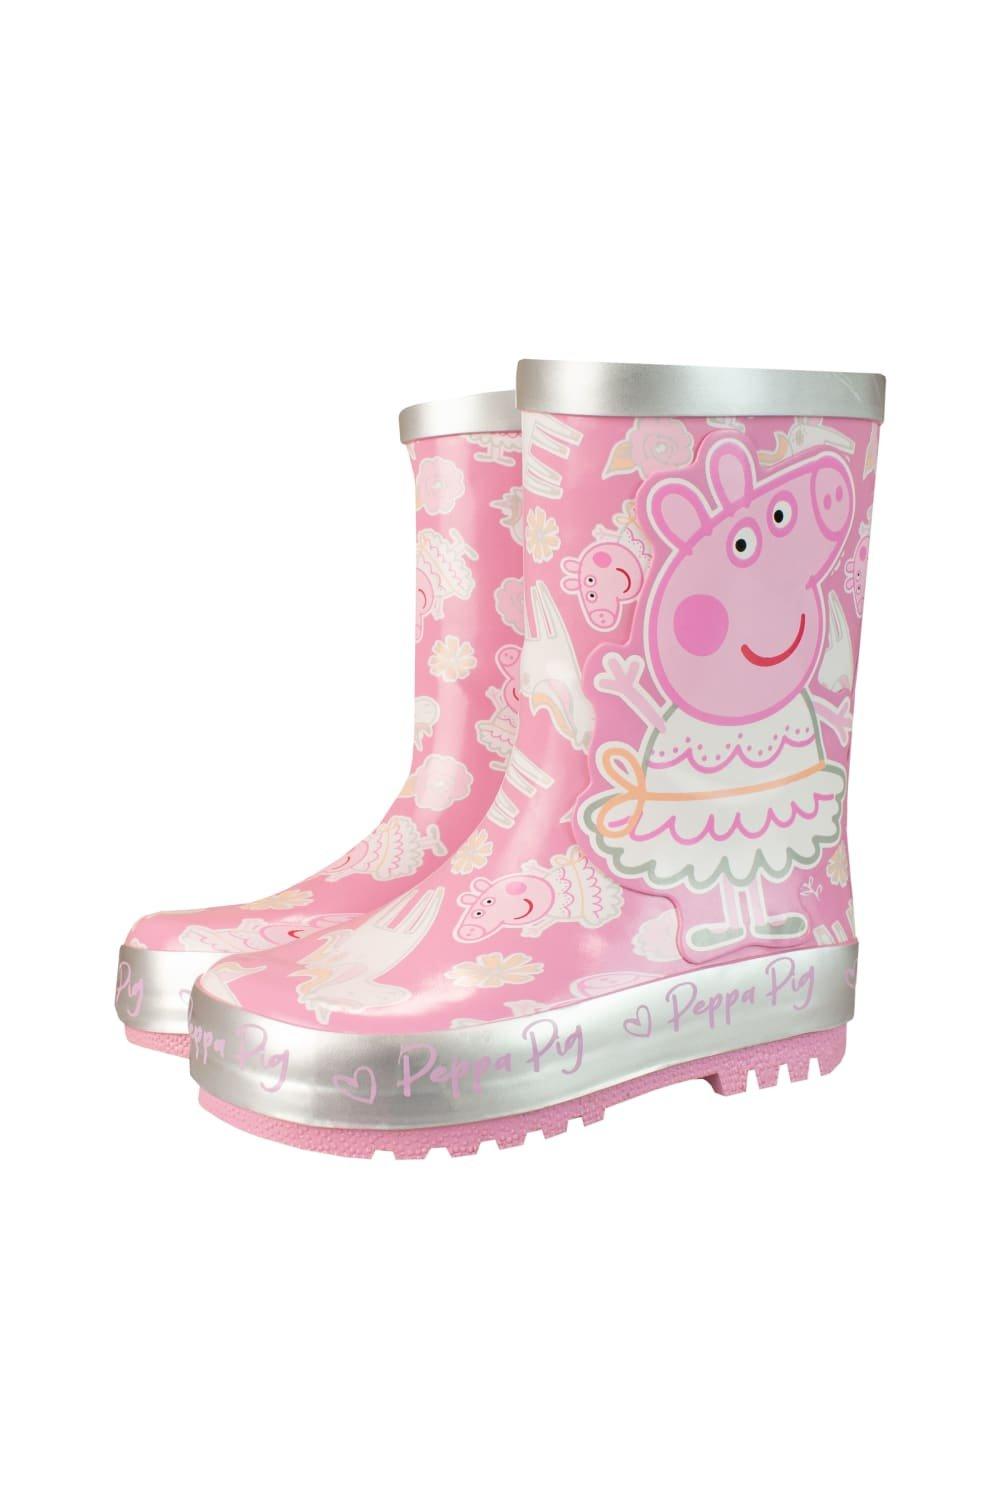 Резиновые сапоги с единорогом Peppa Pig, розовый мешок для сменной обуви свинка пеппа